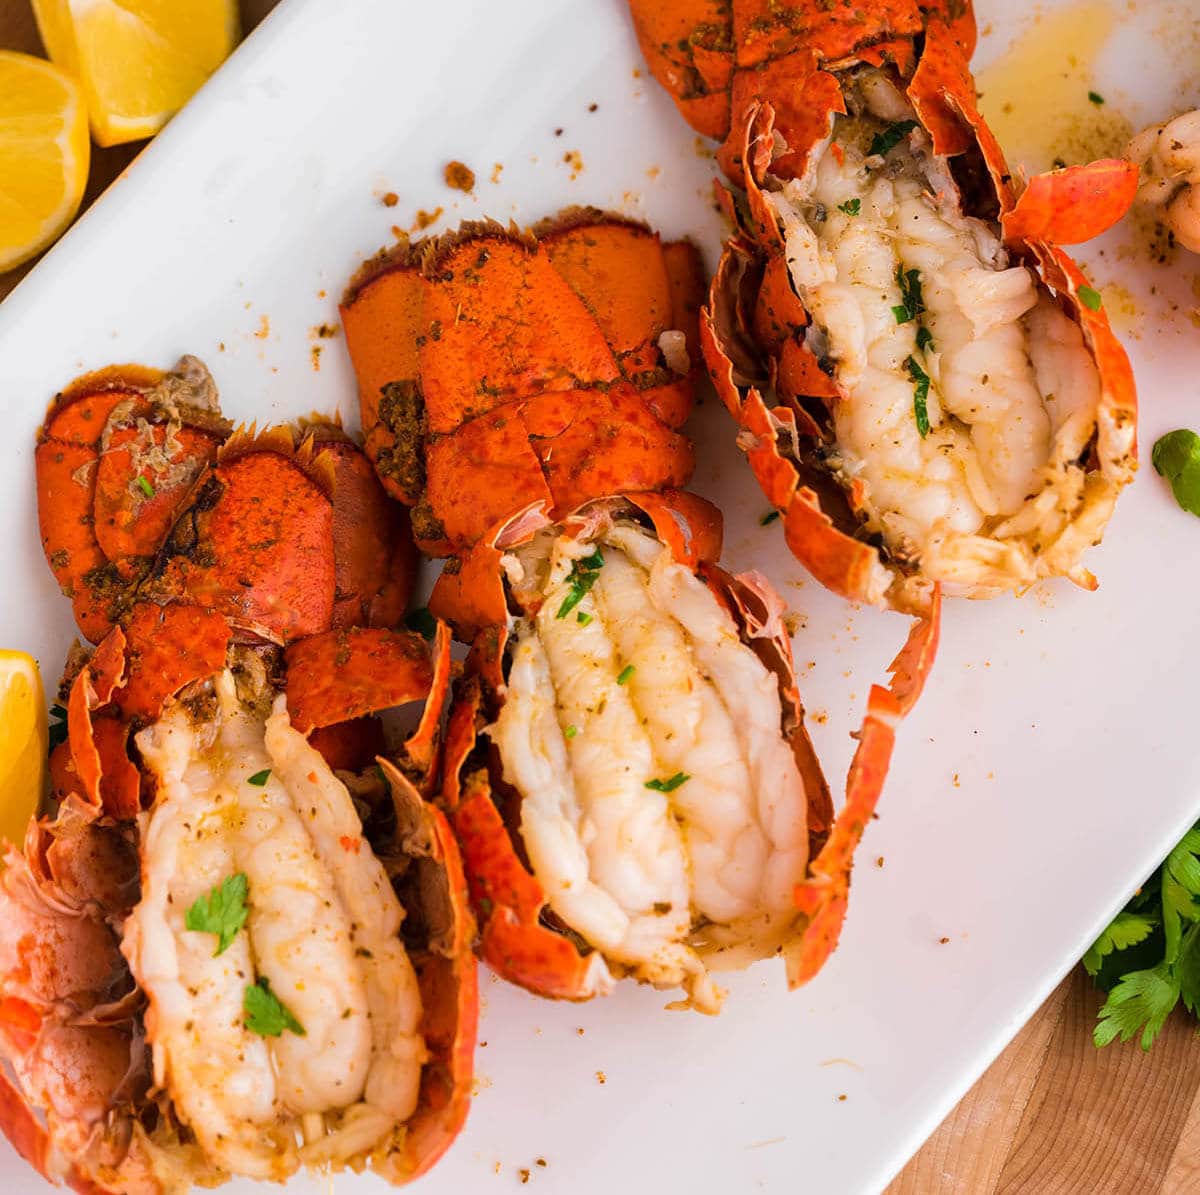 Steamed lobster on platter.